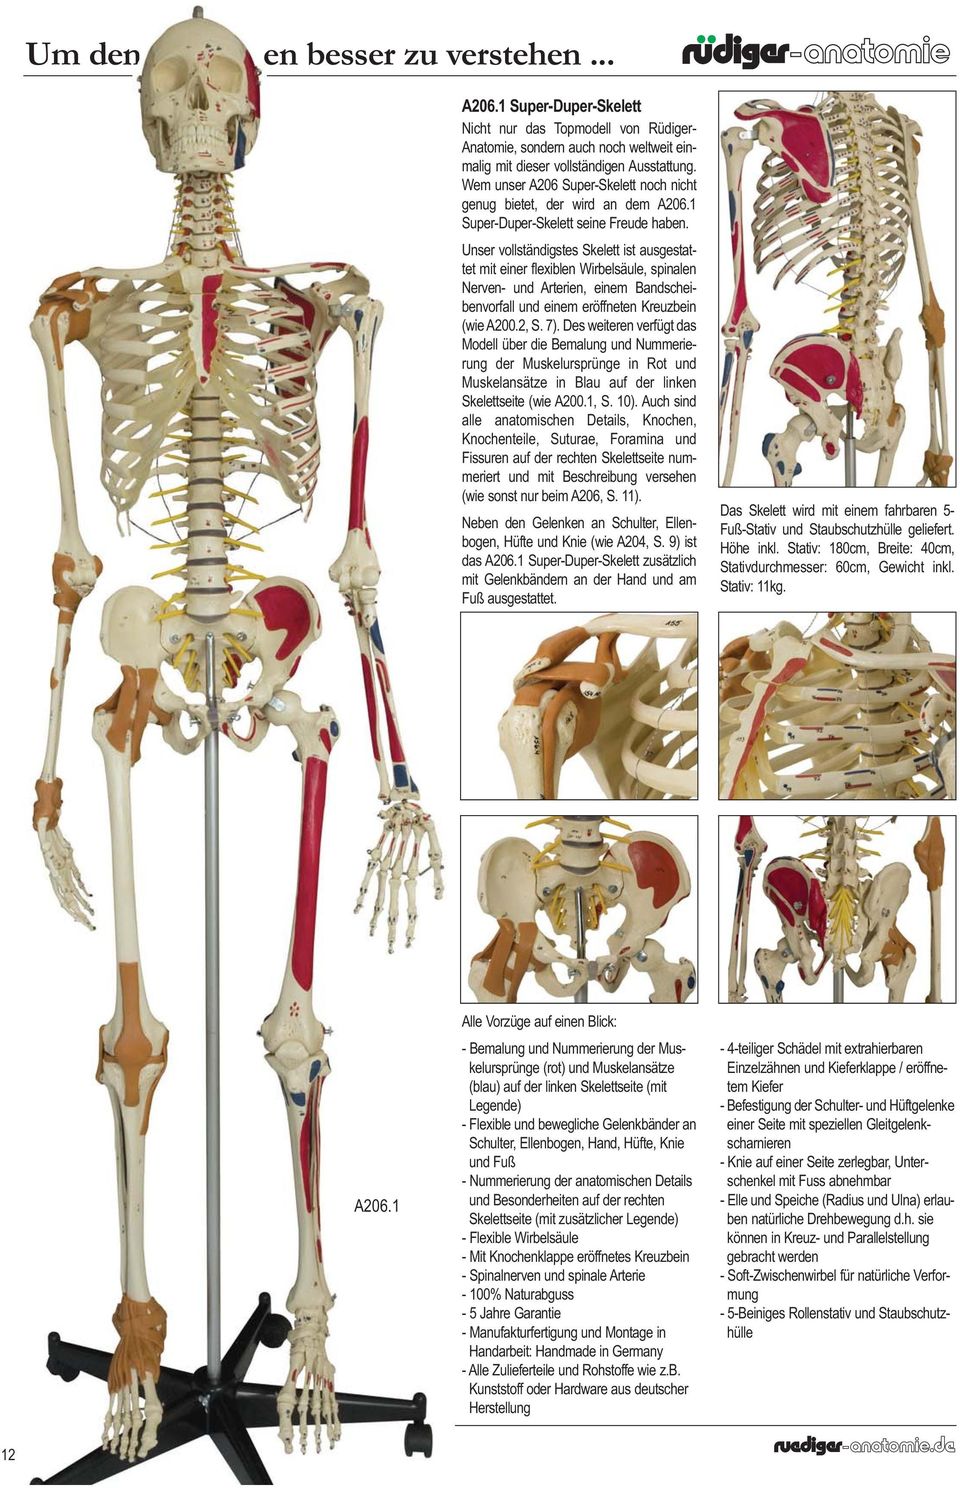 Unser vollständigstes Skelett ist ausgestattet mit einer flexiblen Wirbelsäule, spinalen Nerven- und Arterien, einem Bandscheibenvorfall und einem eröffneten Kreuzbein (wie A200.2, S. 7).